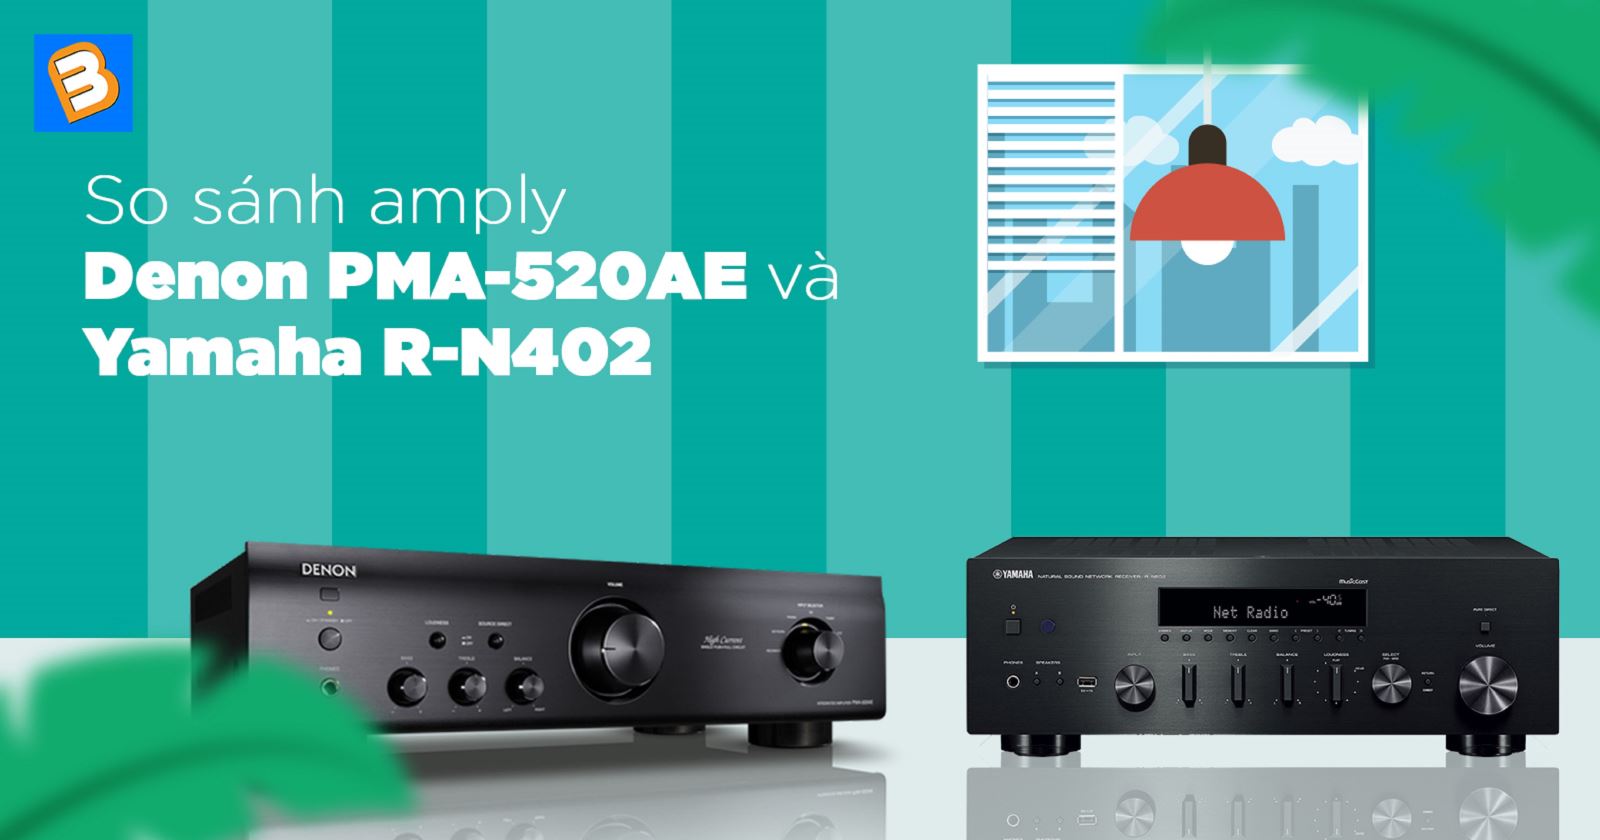 So sánh amply Denon PMA-520AE và Yamaha R-N402